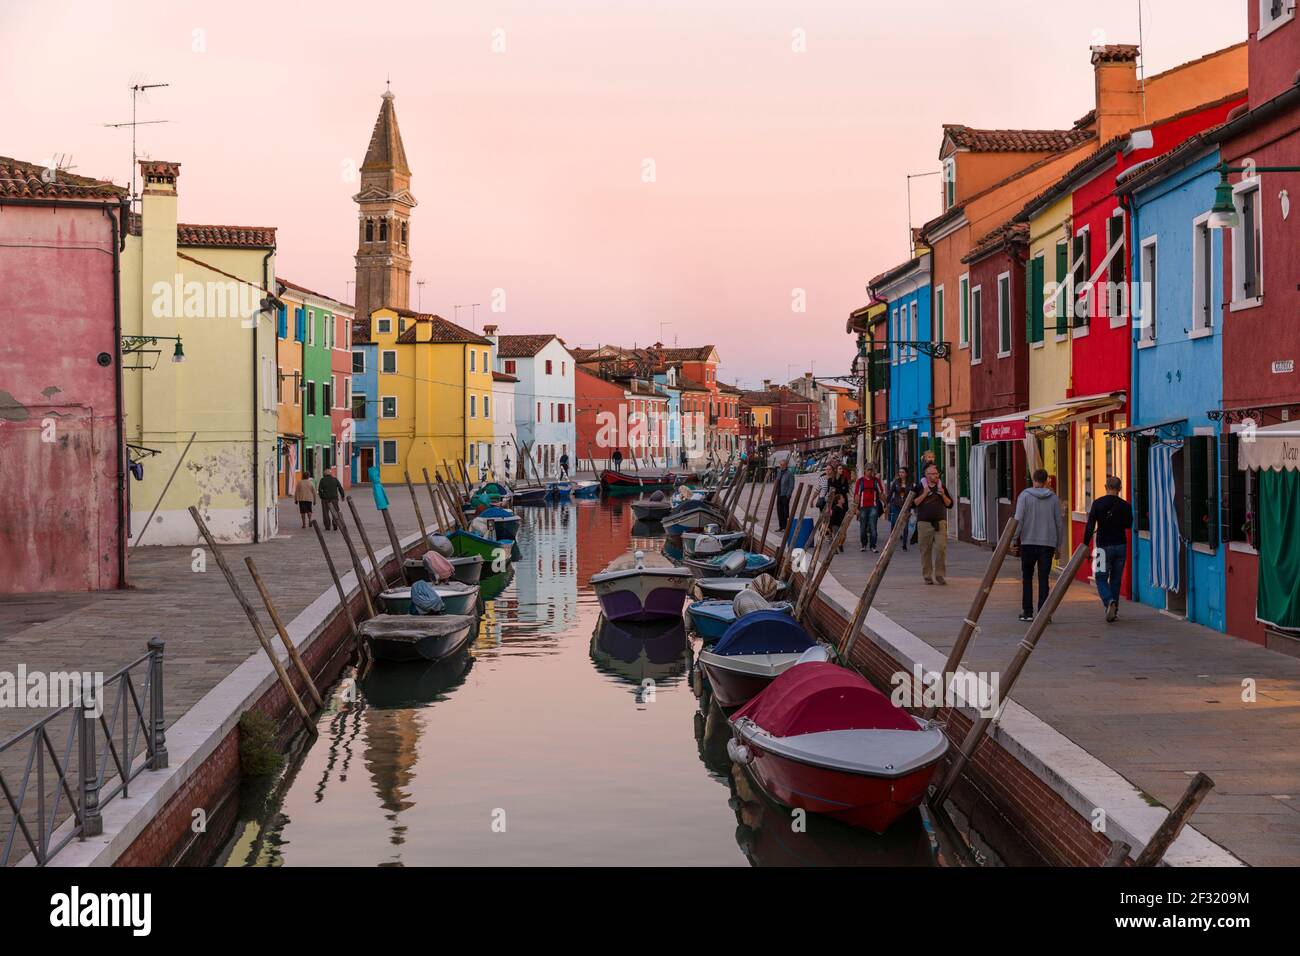 L'isola veneziana di Burano, barche ormeggiate su un canale, case colorate e negozi al crepuscolo con la gente sui marciapiedi. Foto Stock